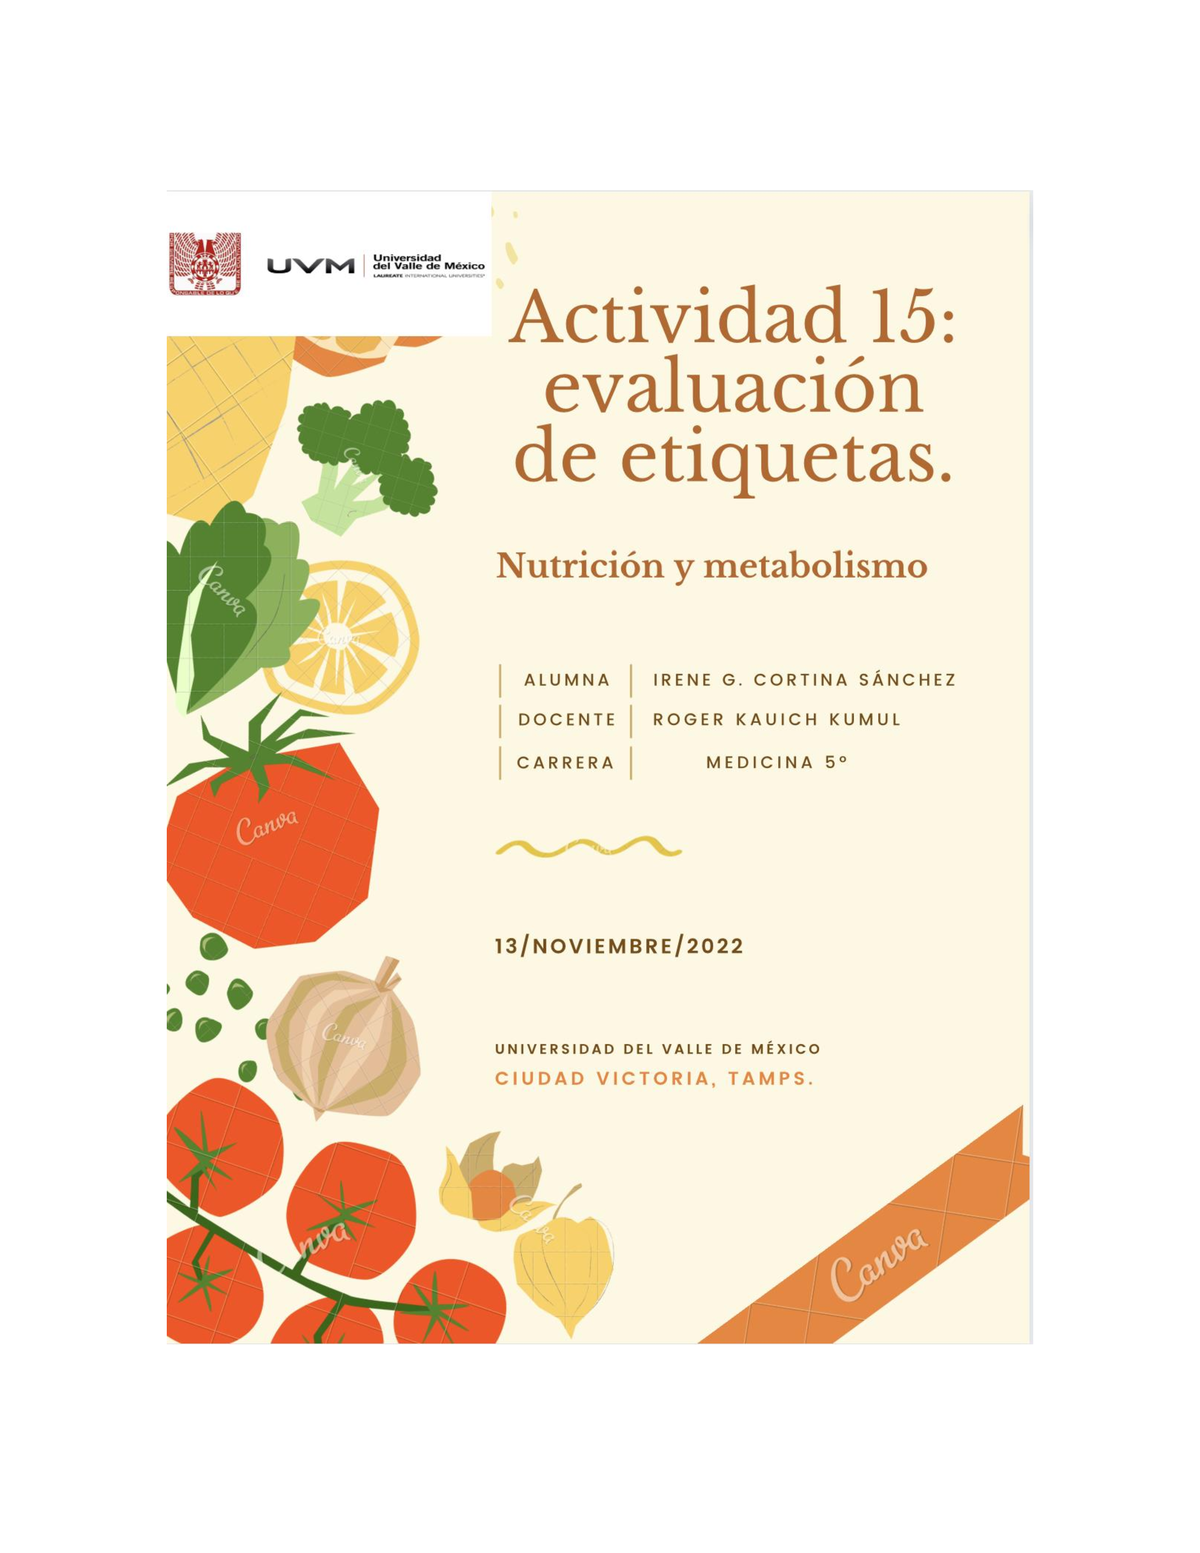 Act15 Igcs Actividad 15 Nutrición Y Metabolismo Evaluación De Etiquetas Pan Bimbo Integral 1300